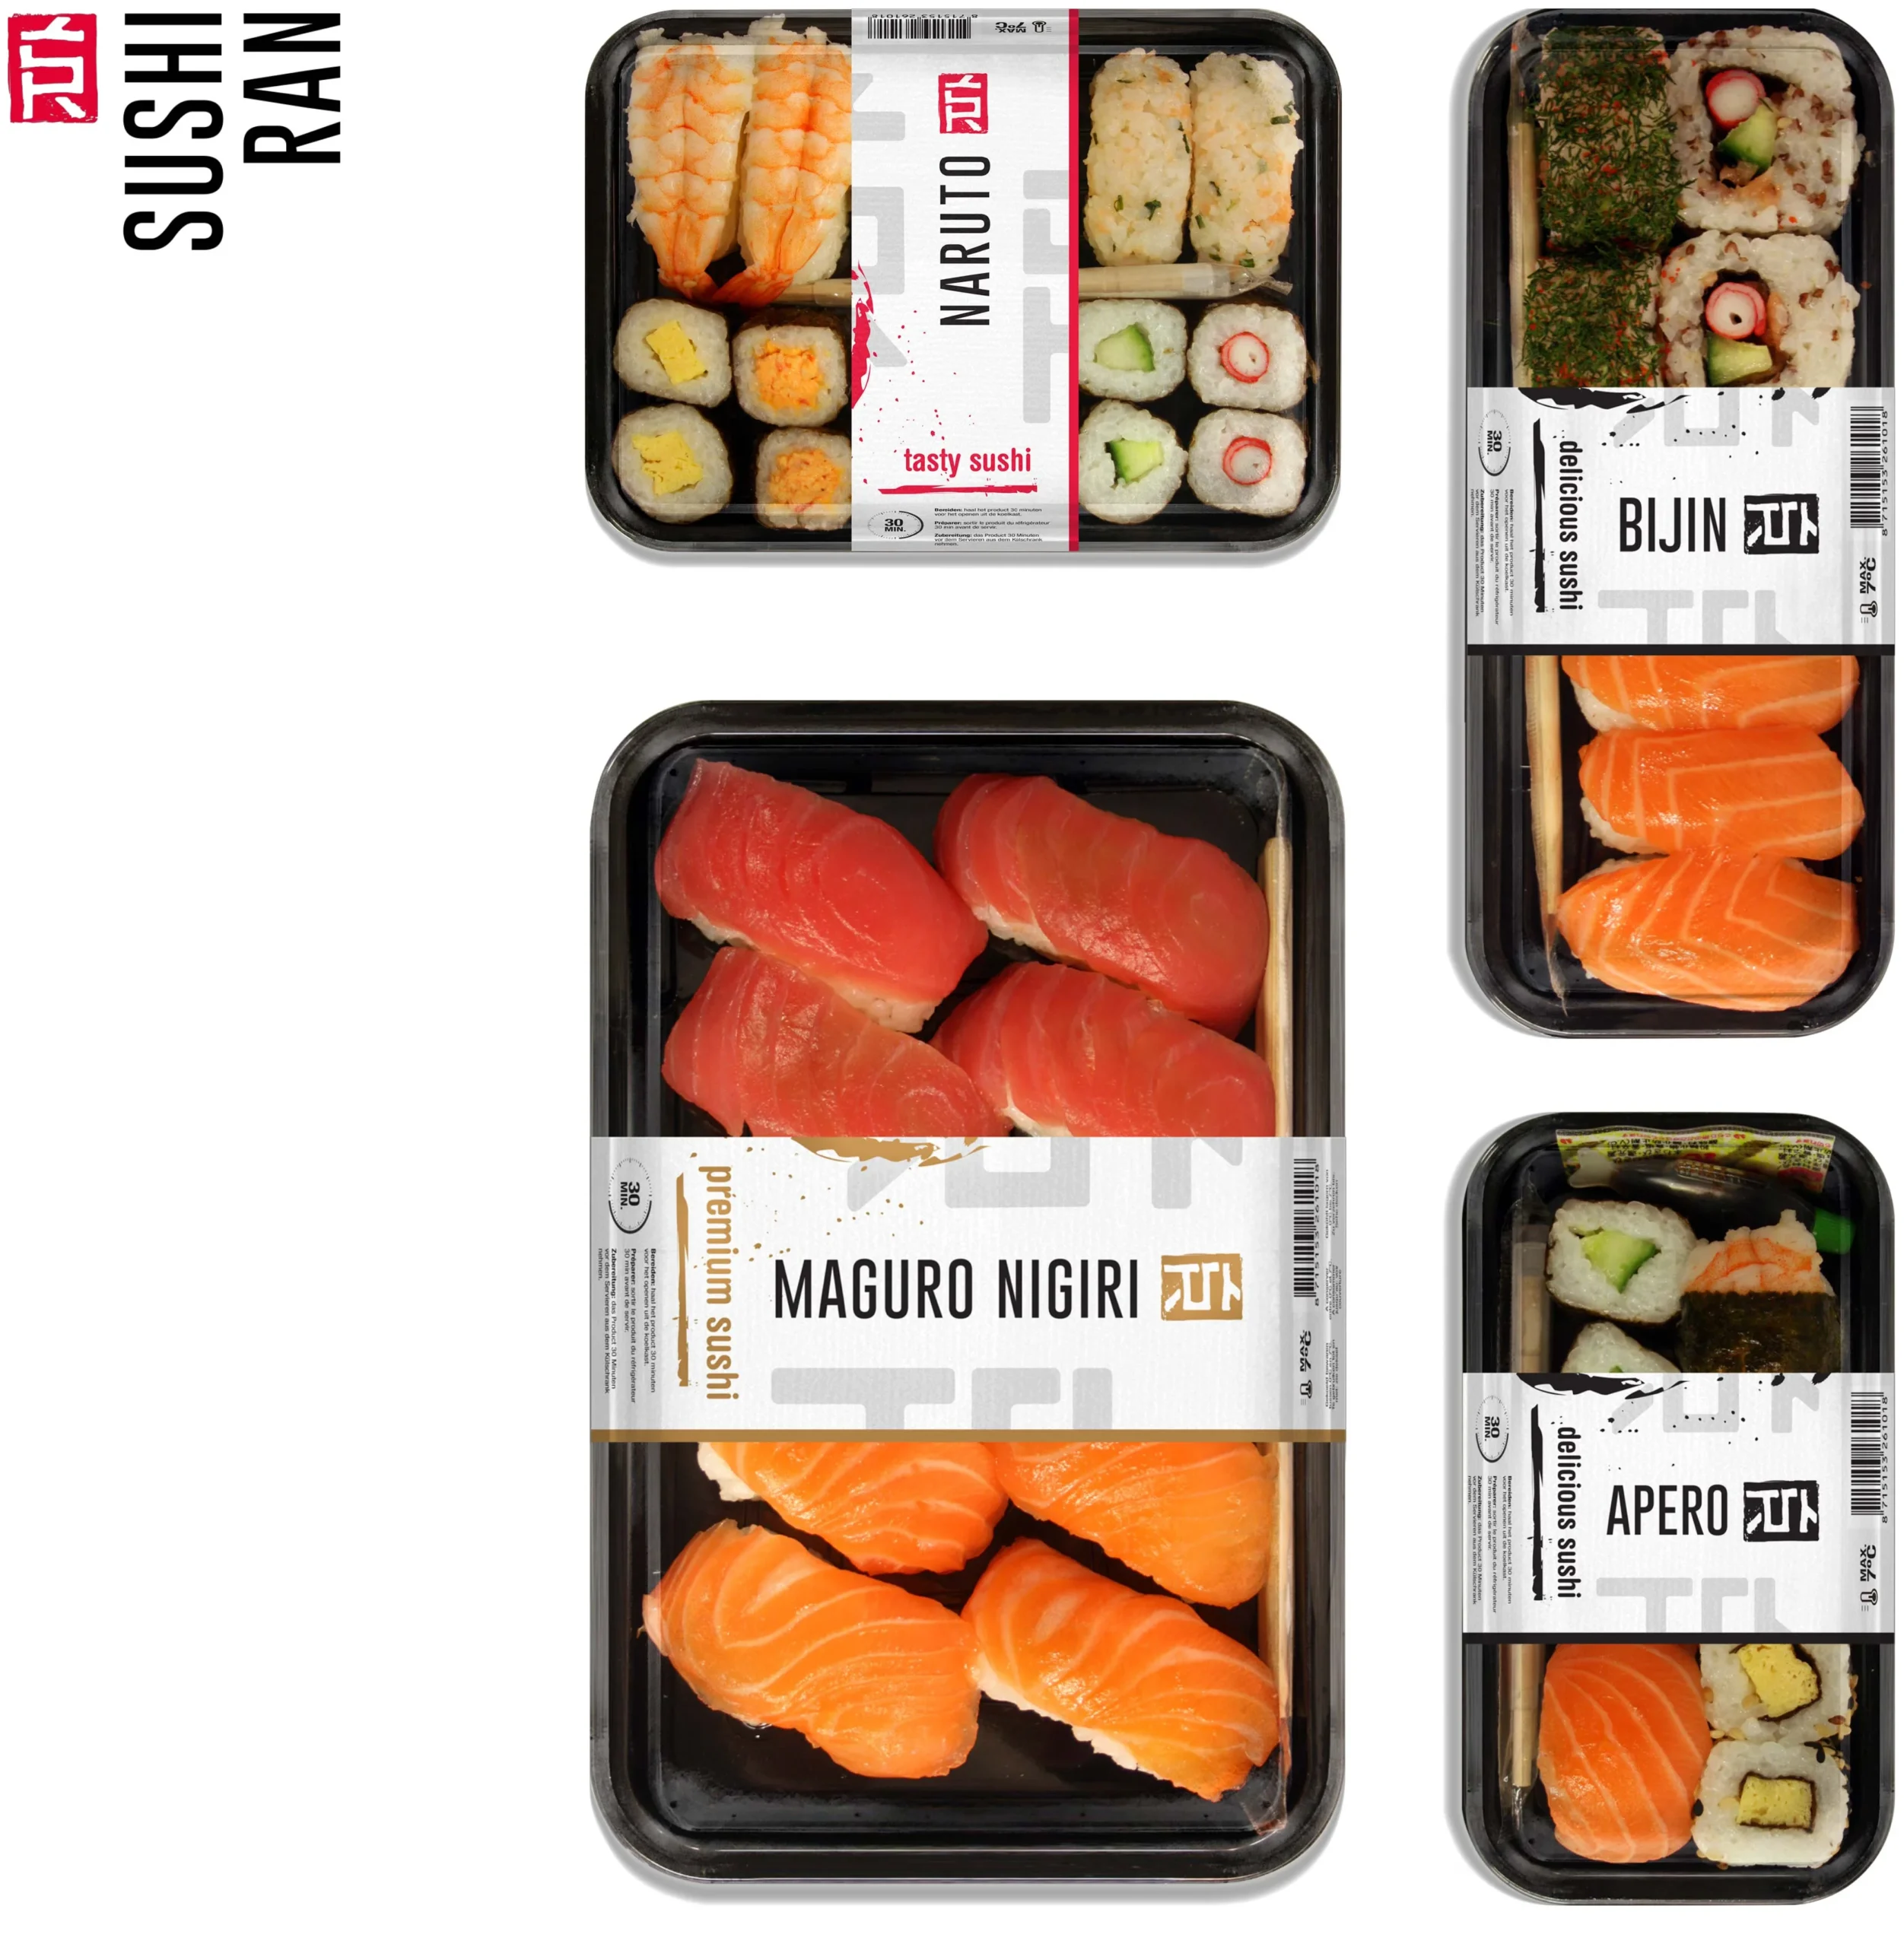 Sushi Ran packs